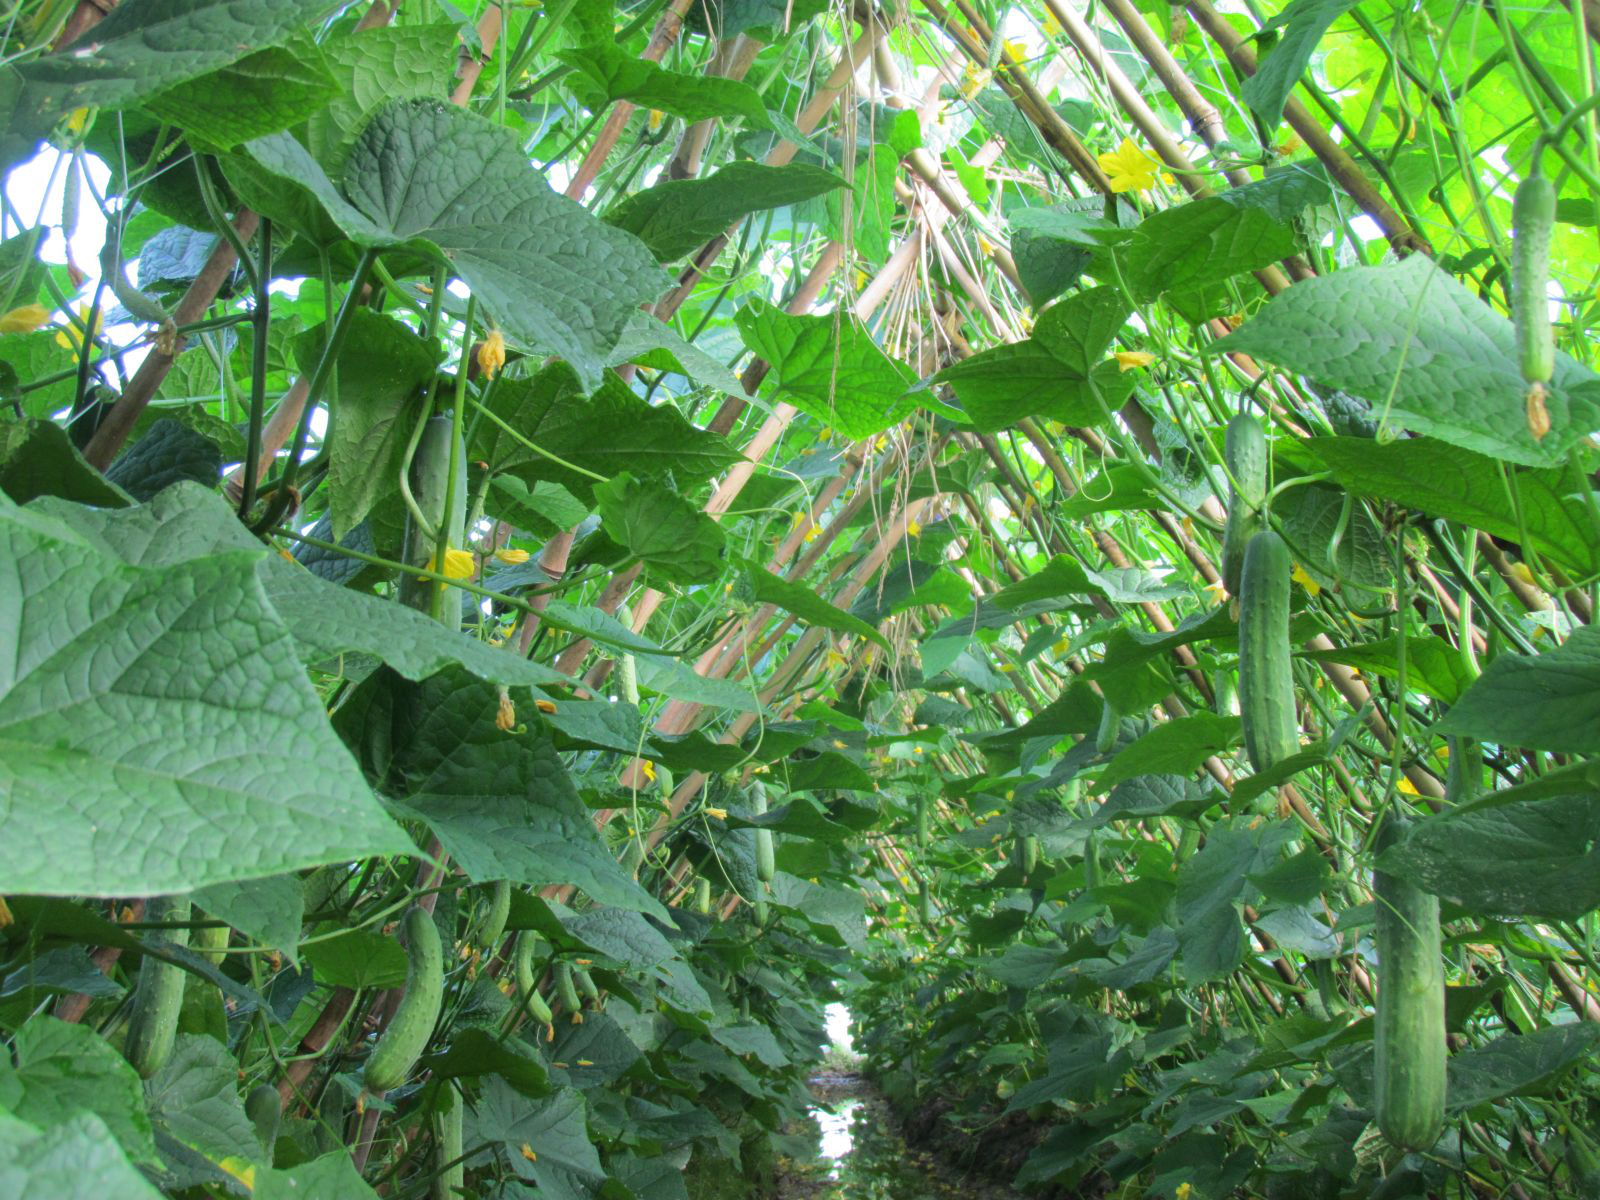 Dưa leo là loại cây được trồng ở vùng nhiệt đới và cận nhiệt